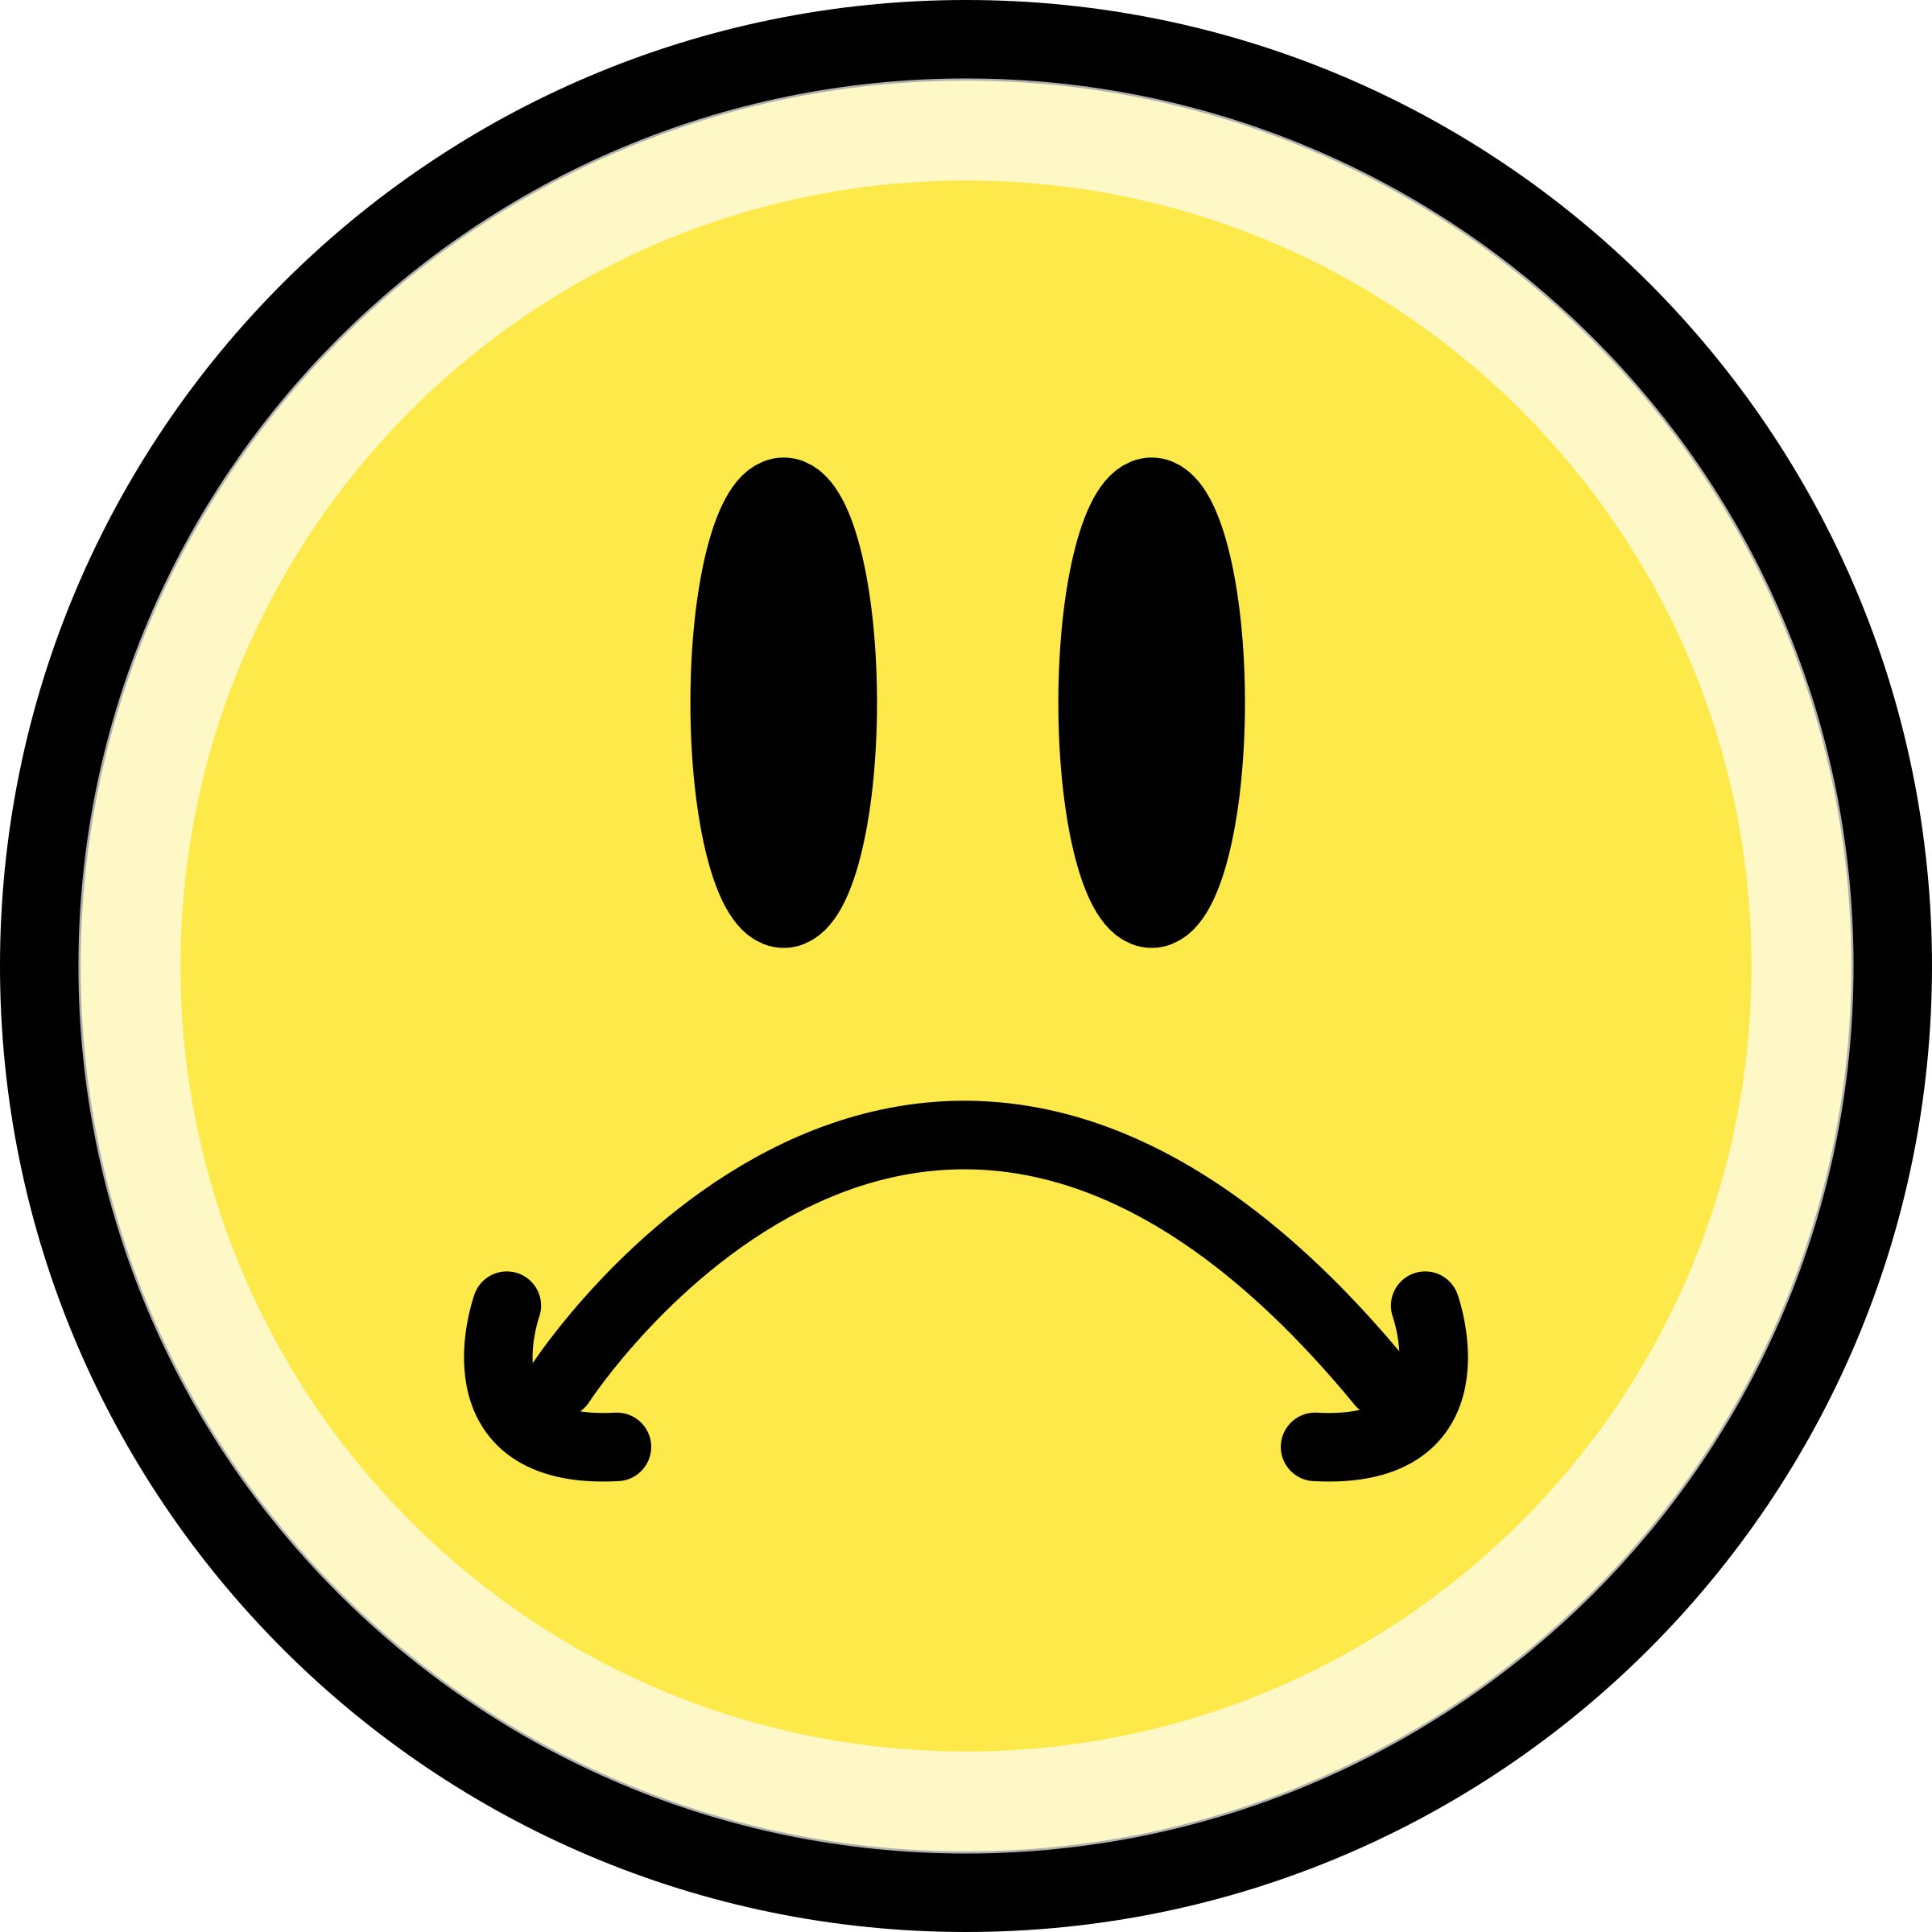 Smiley clipart sad. Face emoticon yellow big